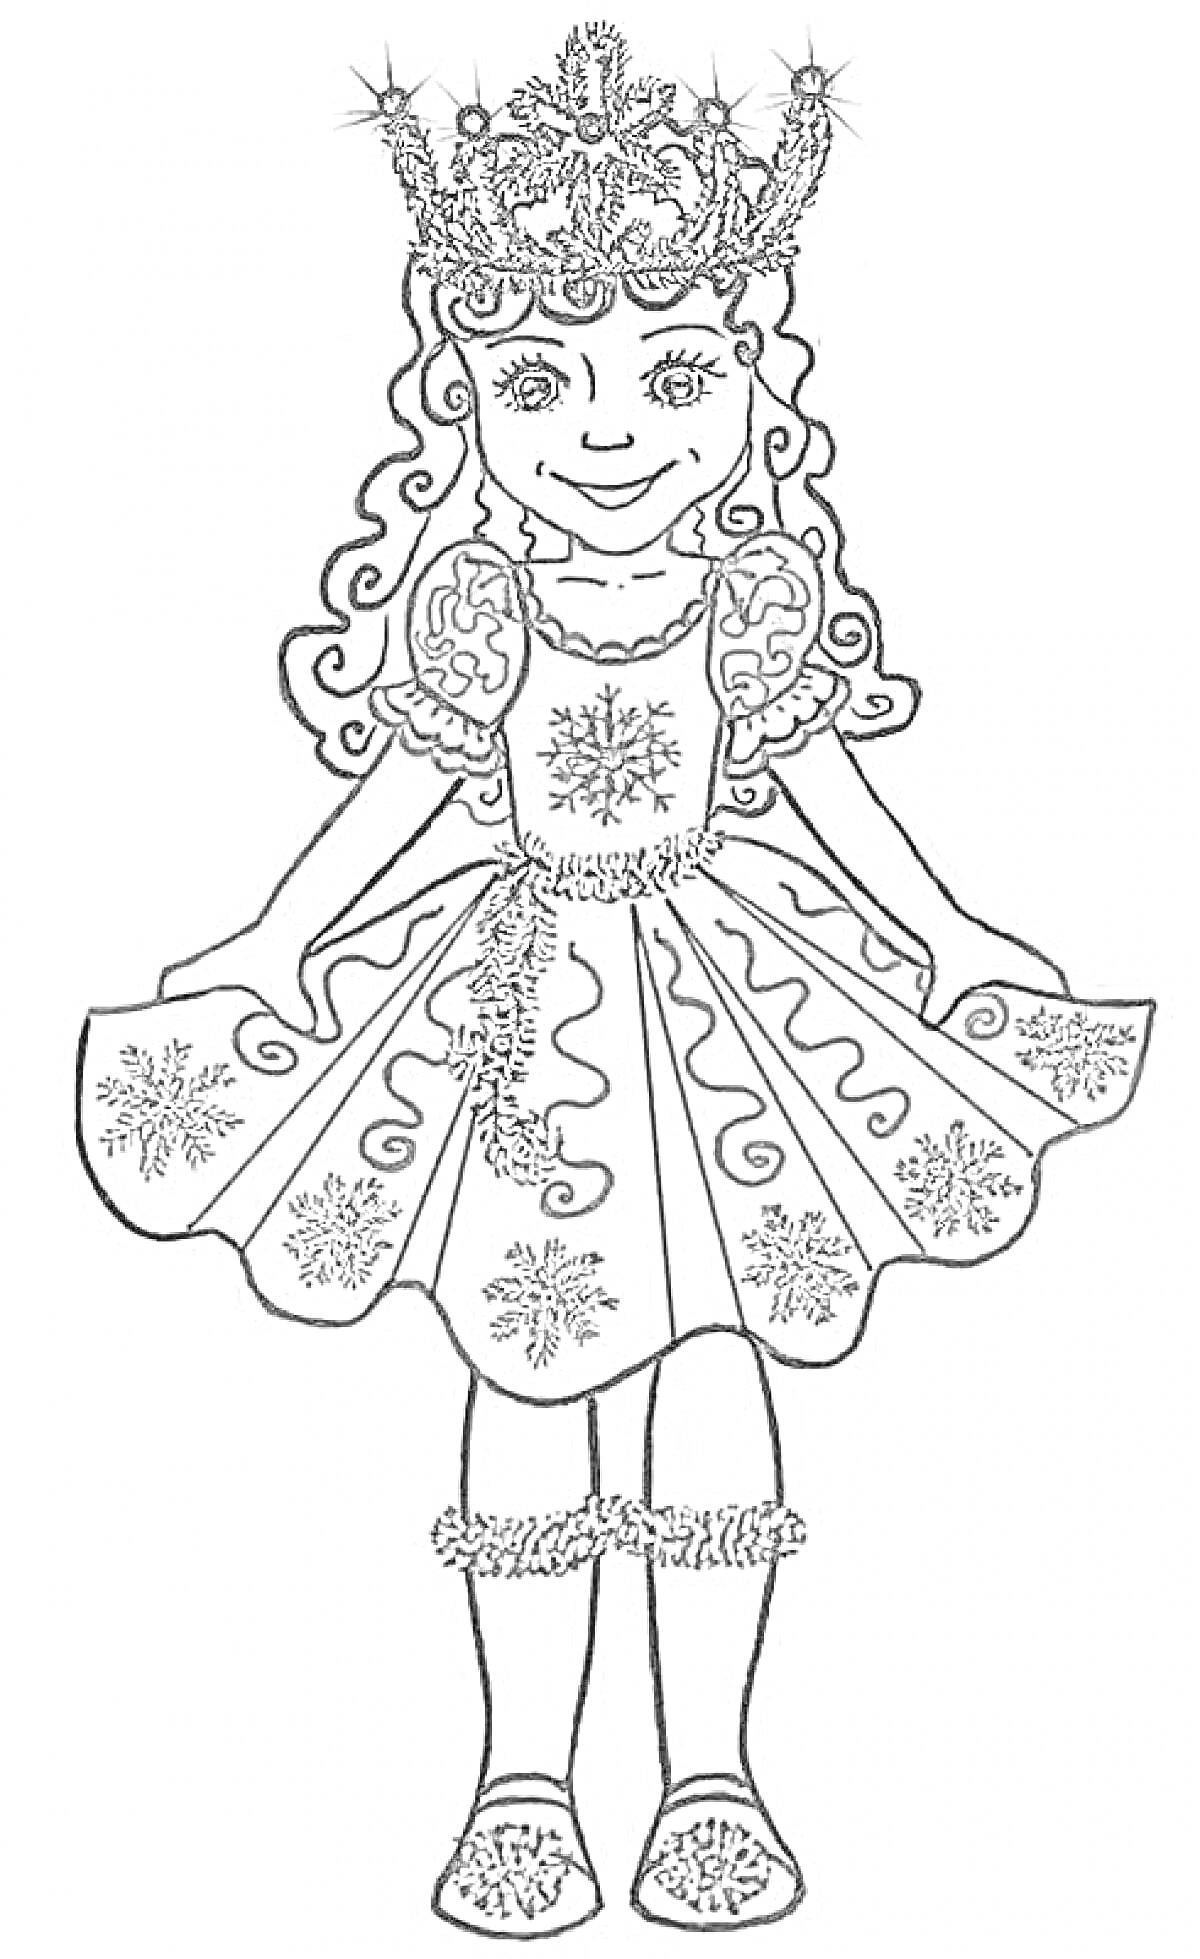 Раскраска Девочка в новогоднем костюме снежинки с короной и платьем со снежинками